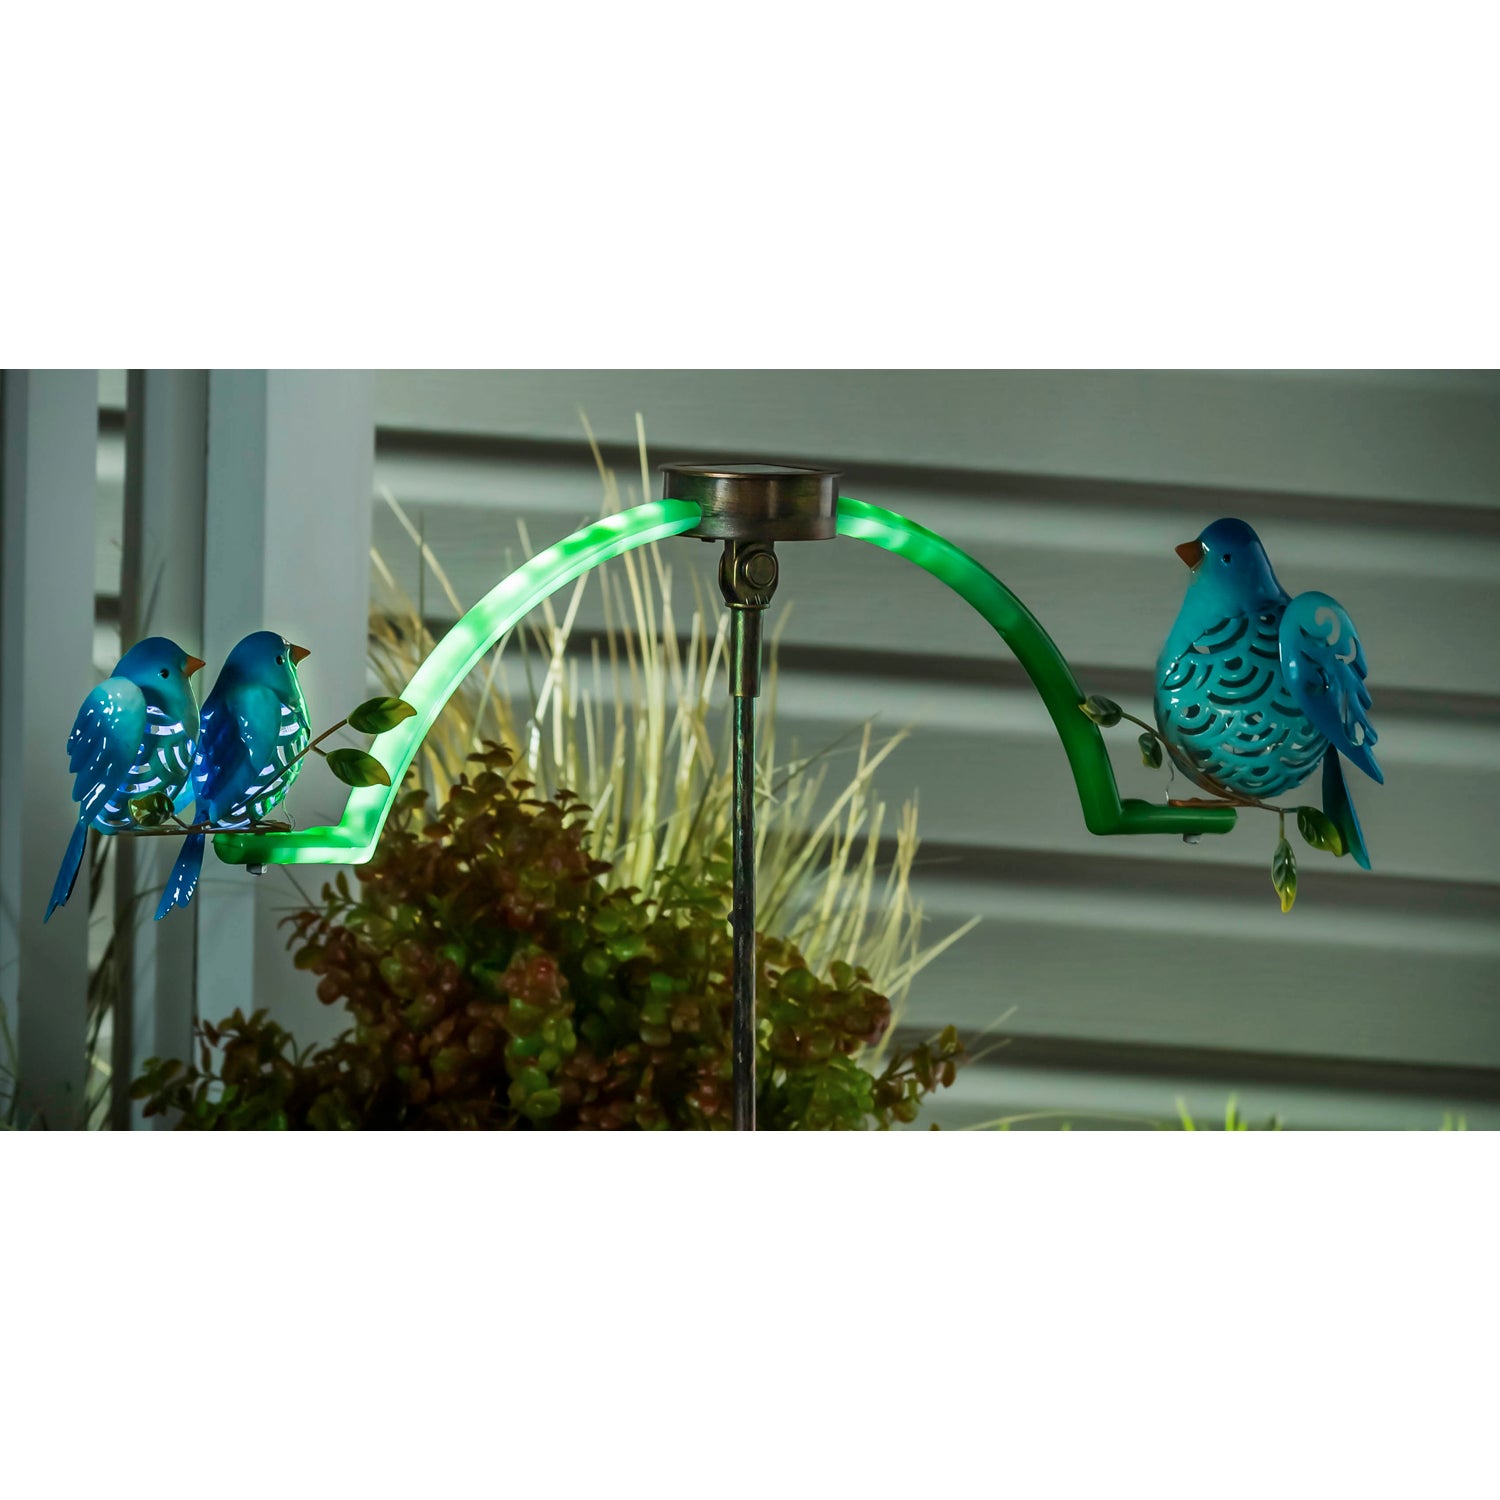 Chasing White Light Blue Bird Solar Balancer Garden Stake